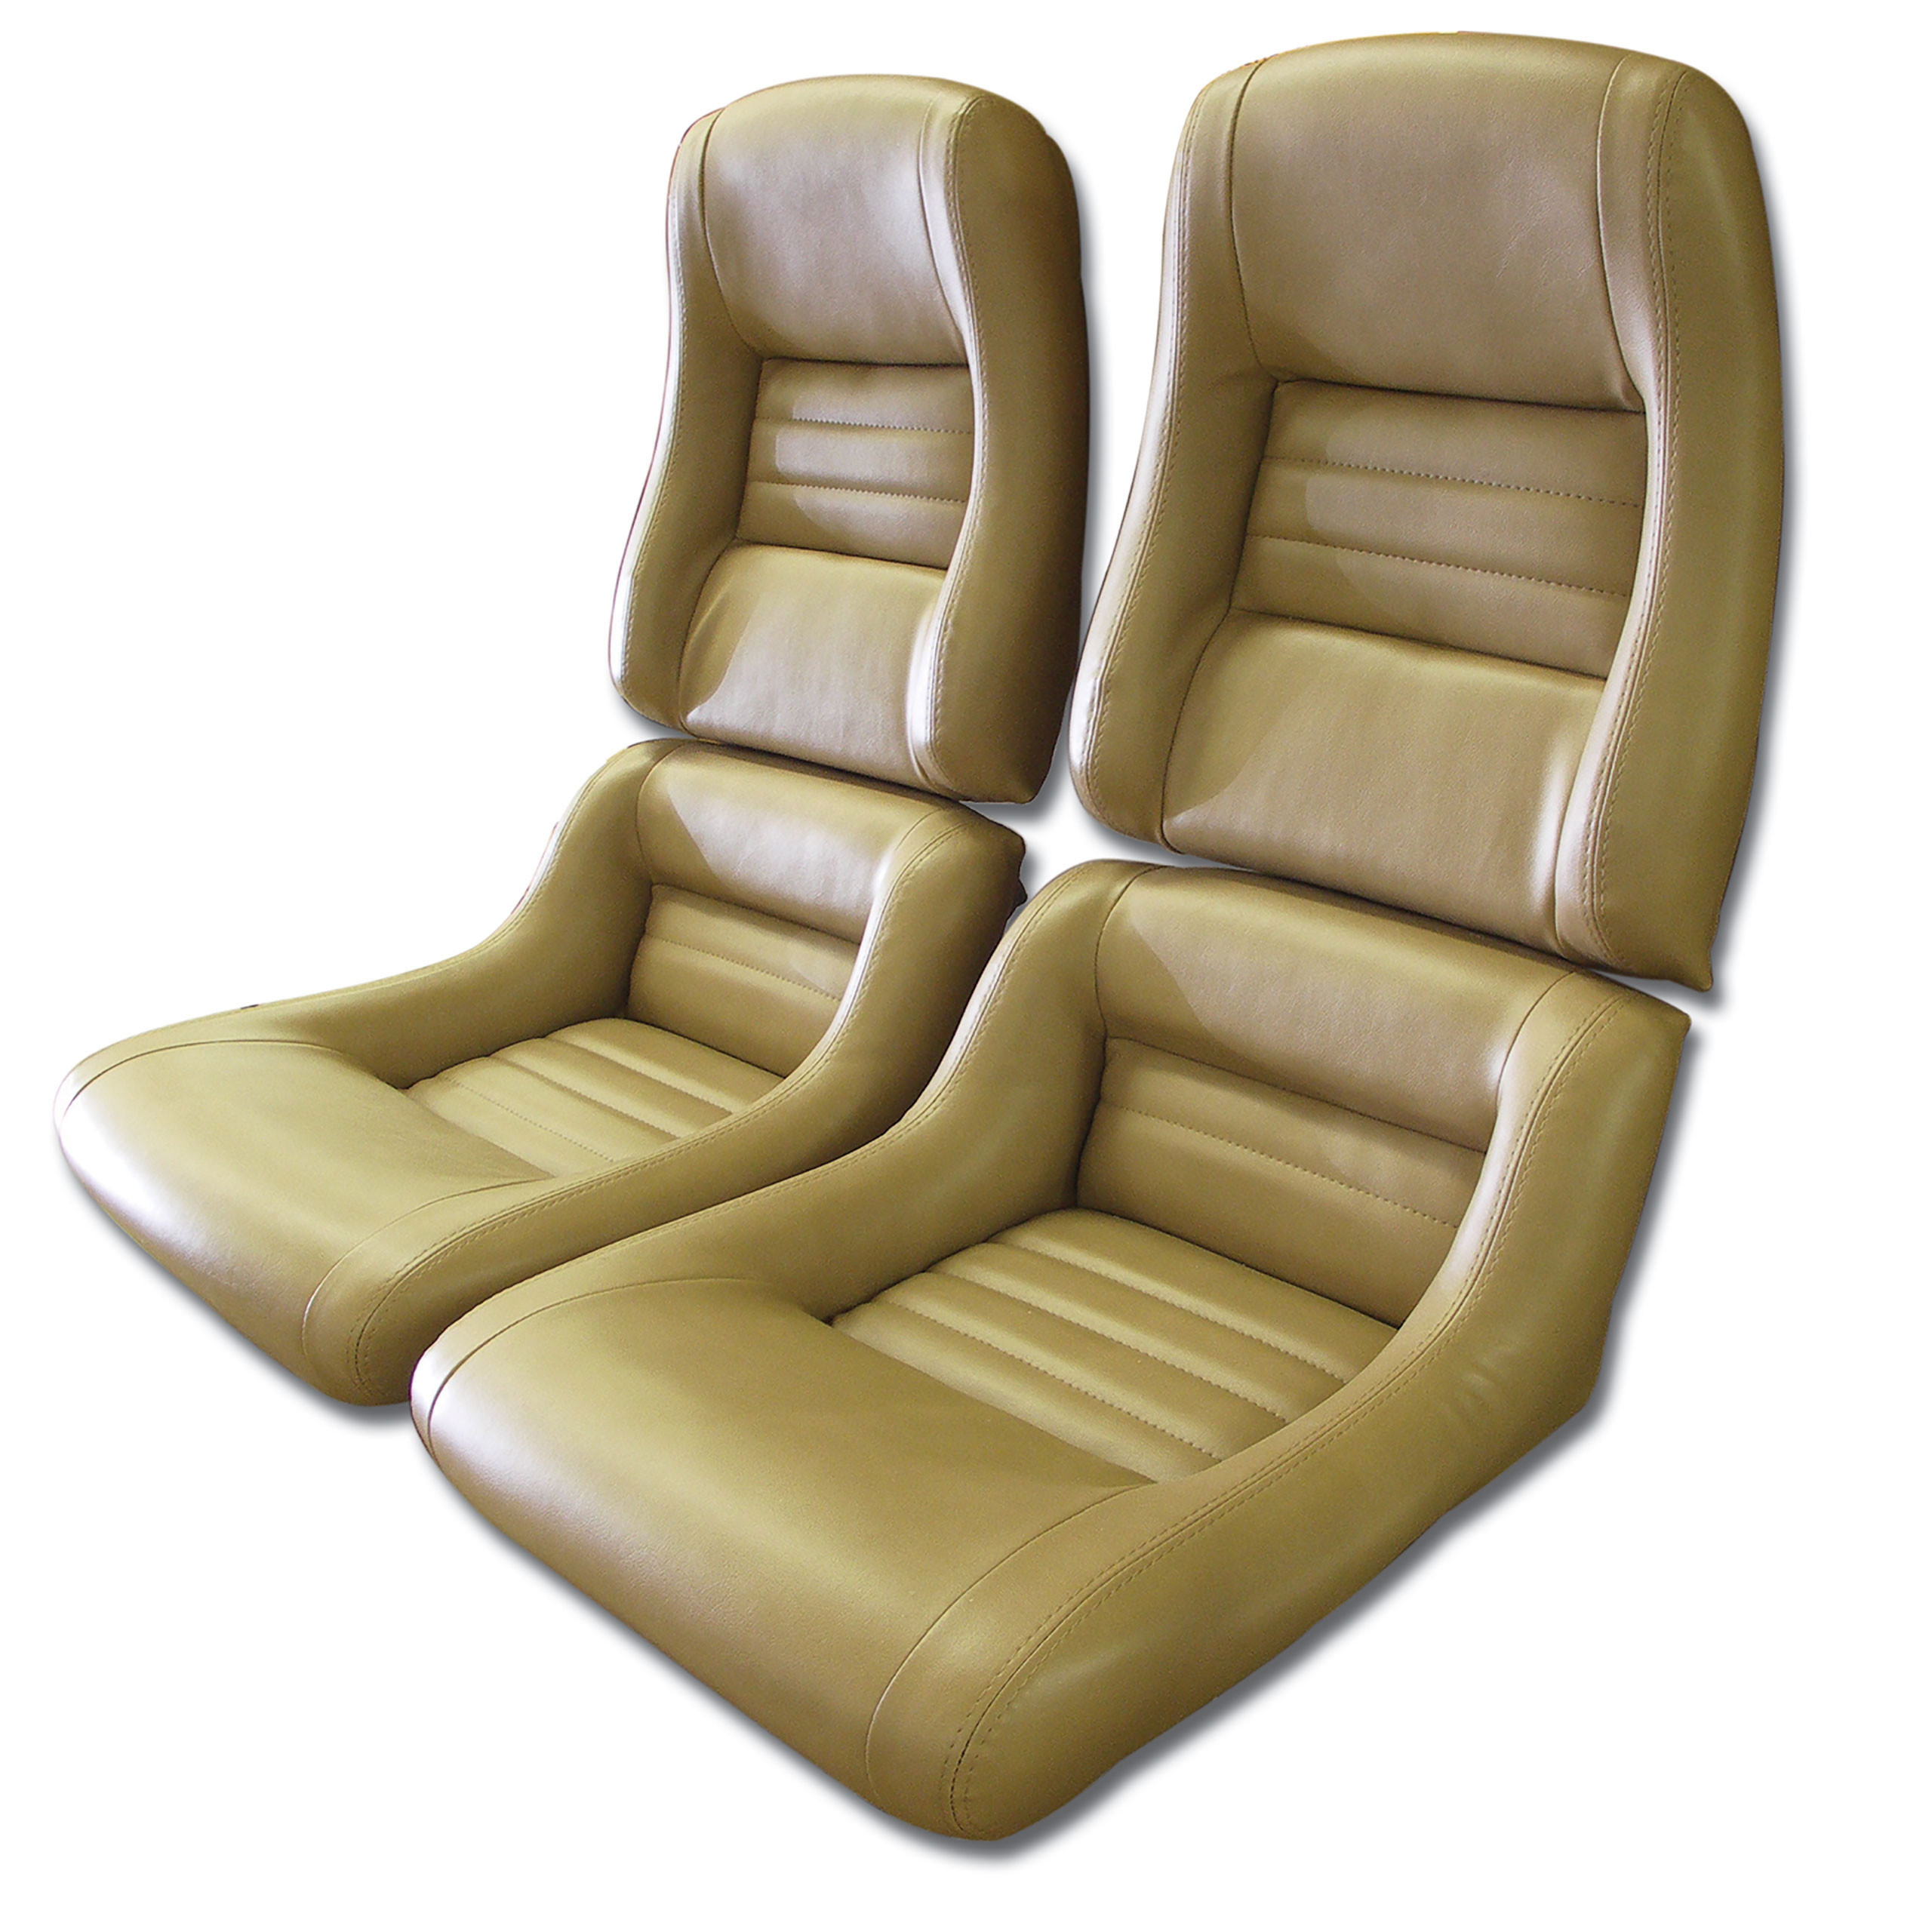 1981-1982 Corvette C3 "Leather-Like" Vinyl Seat Covers mel 2" Bolster CA-421658 